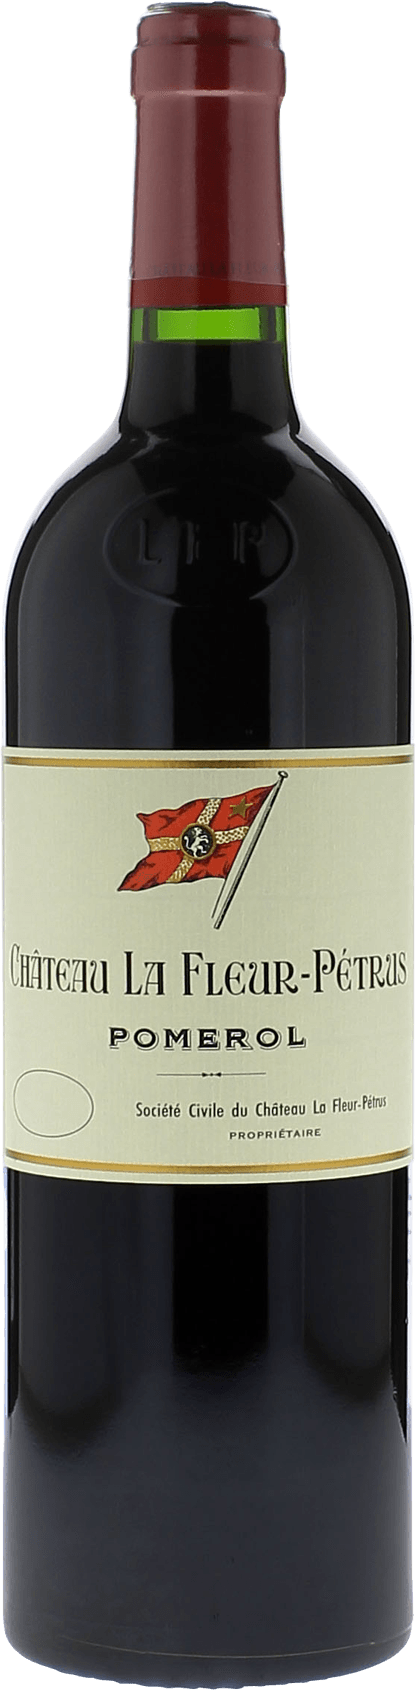 La fleur petrus 1975  Pomerol, Bordeaux rouge